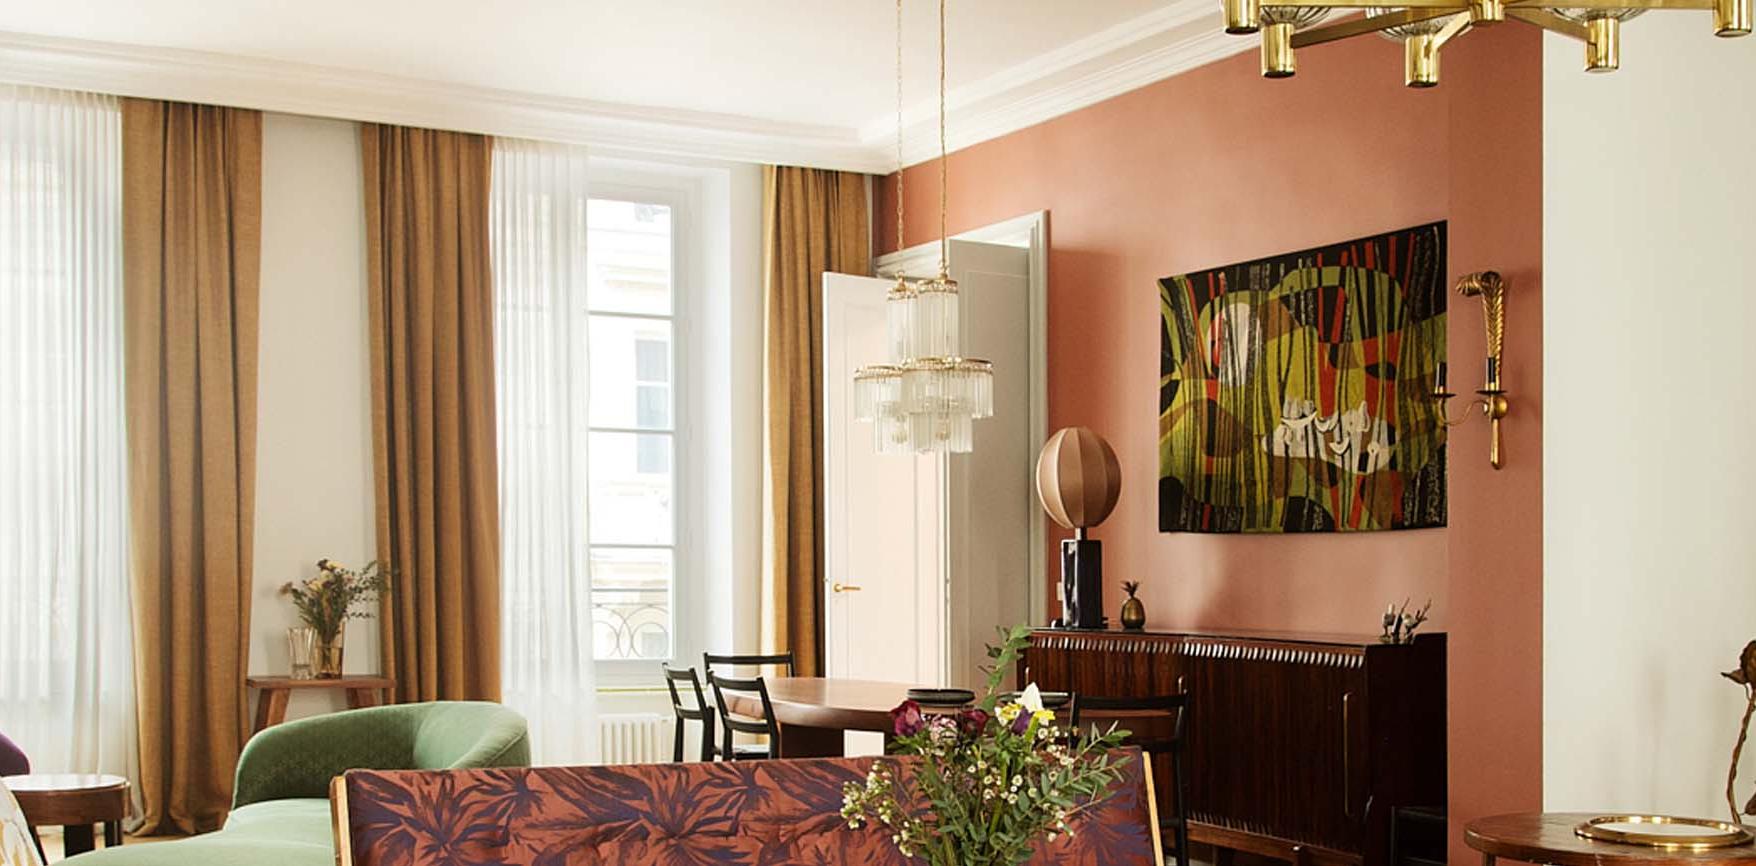 Confection des voilages en lin et des rideaux en coton dans toutes les pièces de l'appartement de 250m².